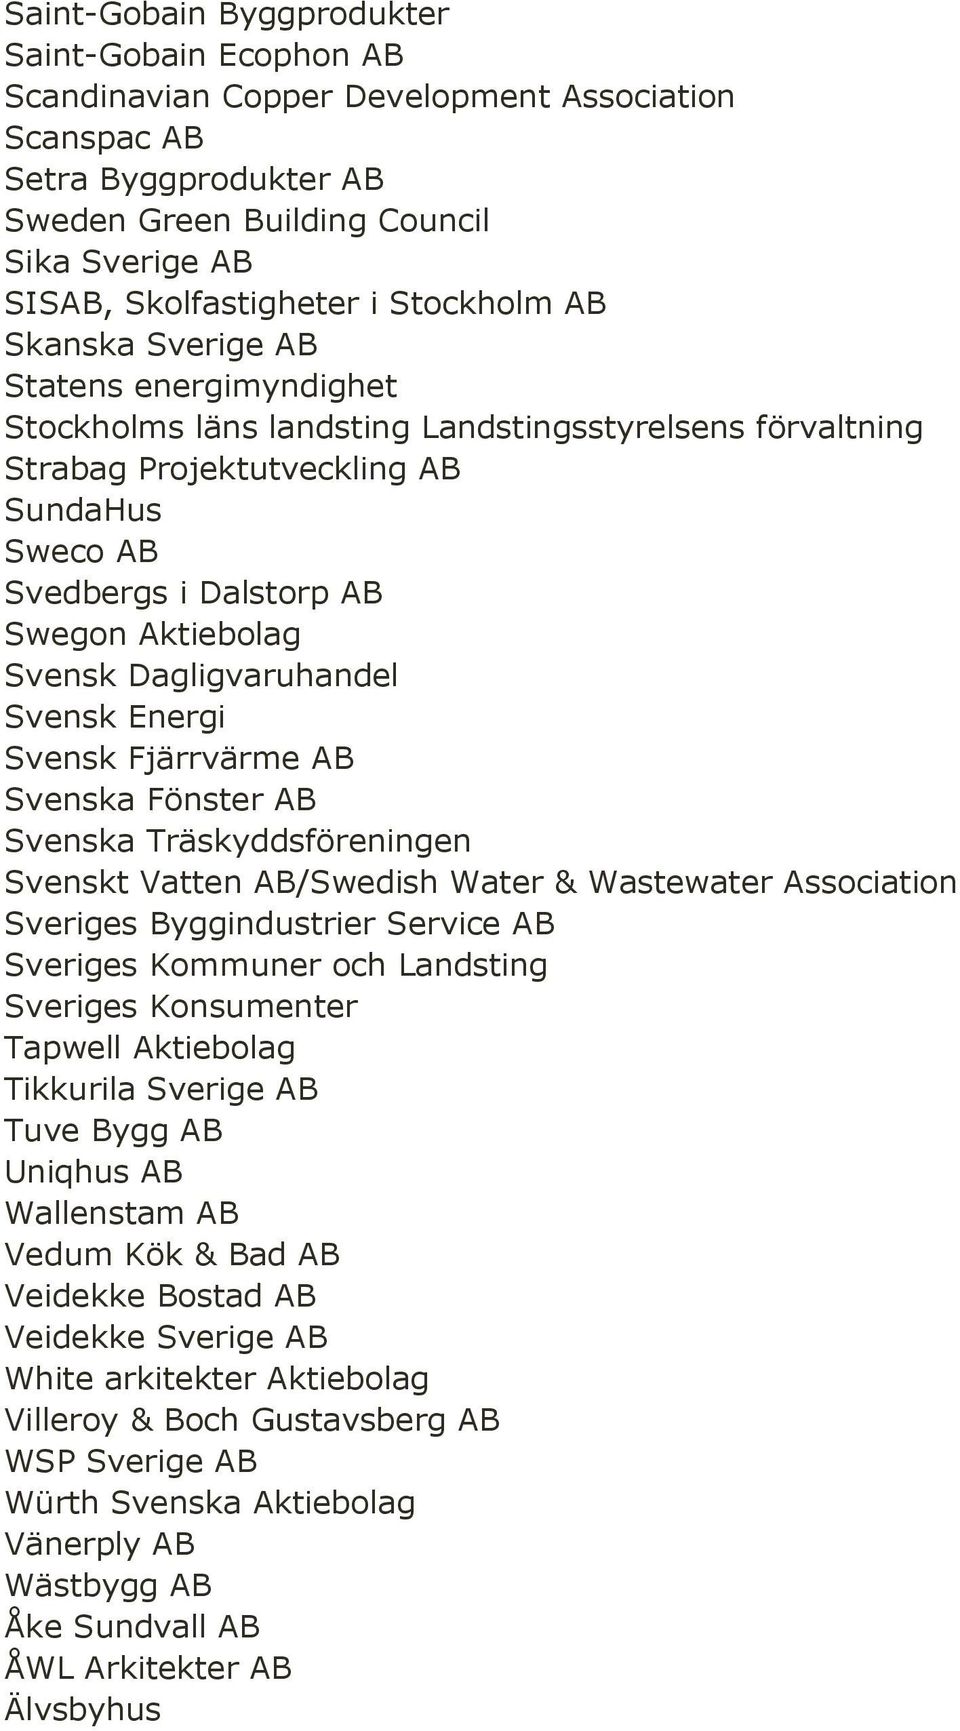 Aktiebolag Svensk Dagligvaruhandel Svensk Energi Svensk Fjärrvärme AB Svenska Fönster AB Svenska Träskyddsföreningen Svenskt Vatten AB/Swedish Water & Wastewater Association Sveriges Byggindustrier